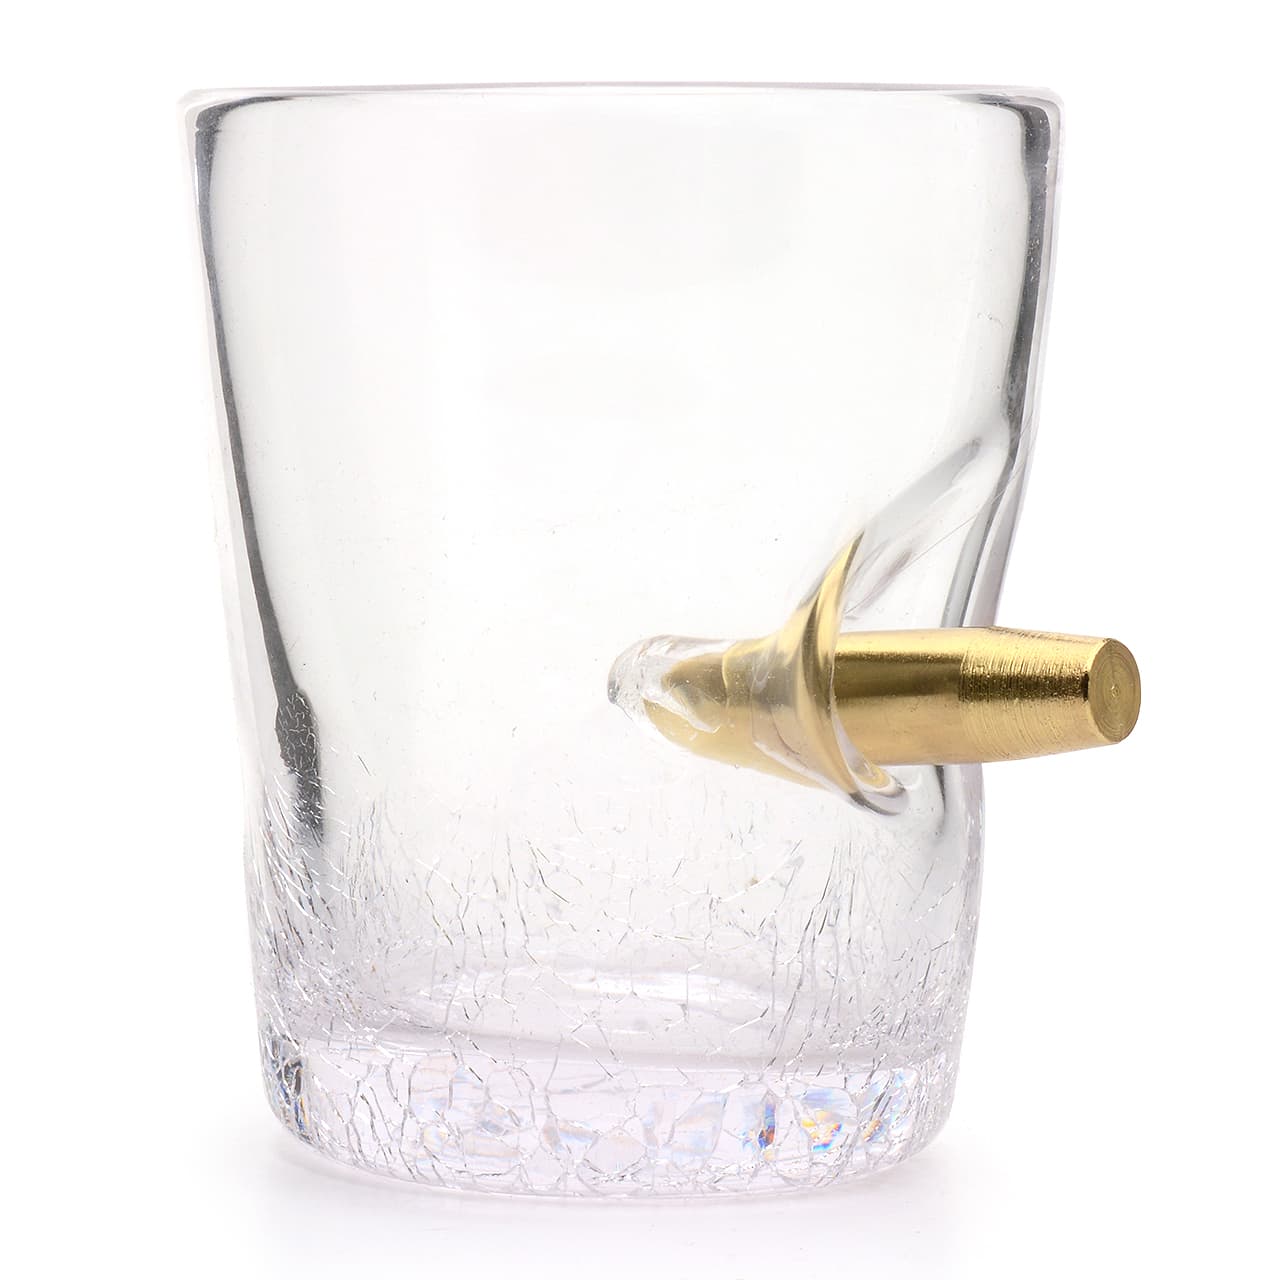 Novelty Bullet Shot in the Glass Tumbler Glasses 300ml